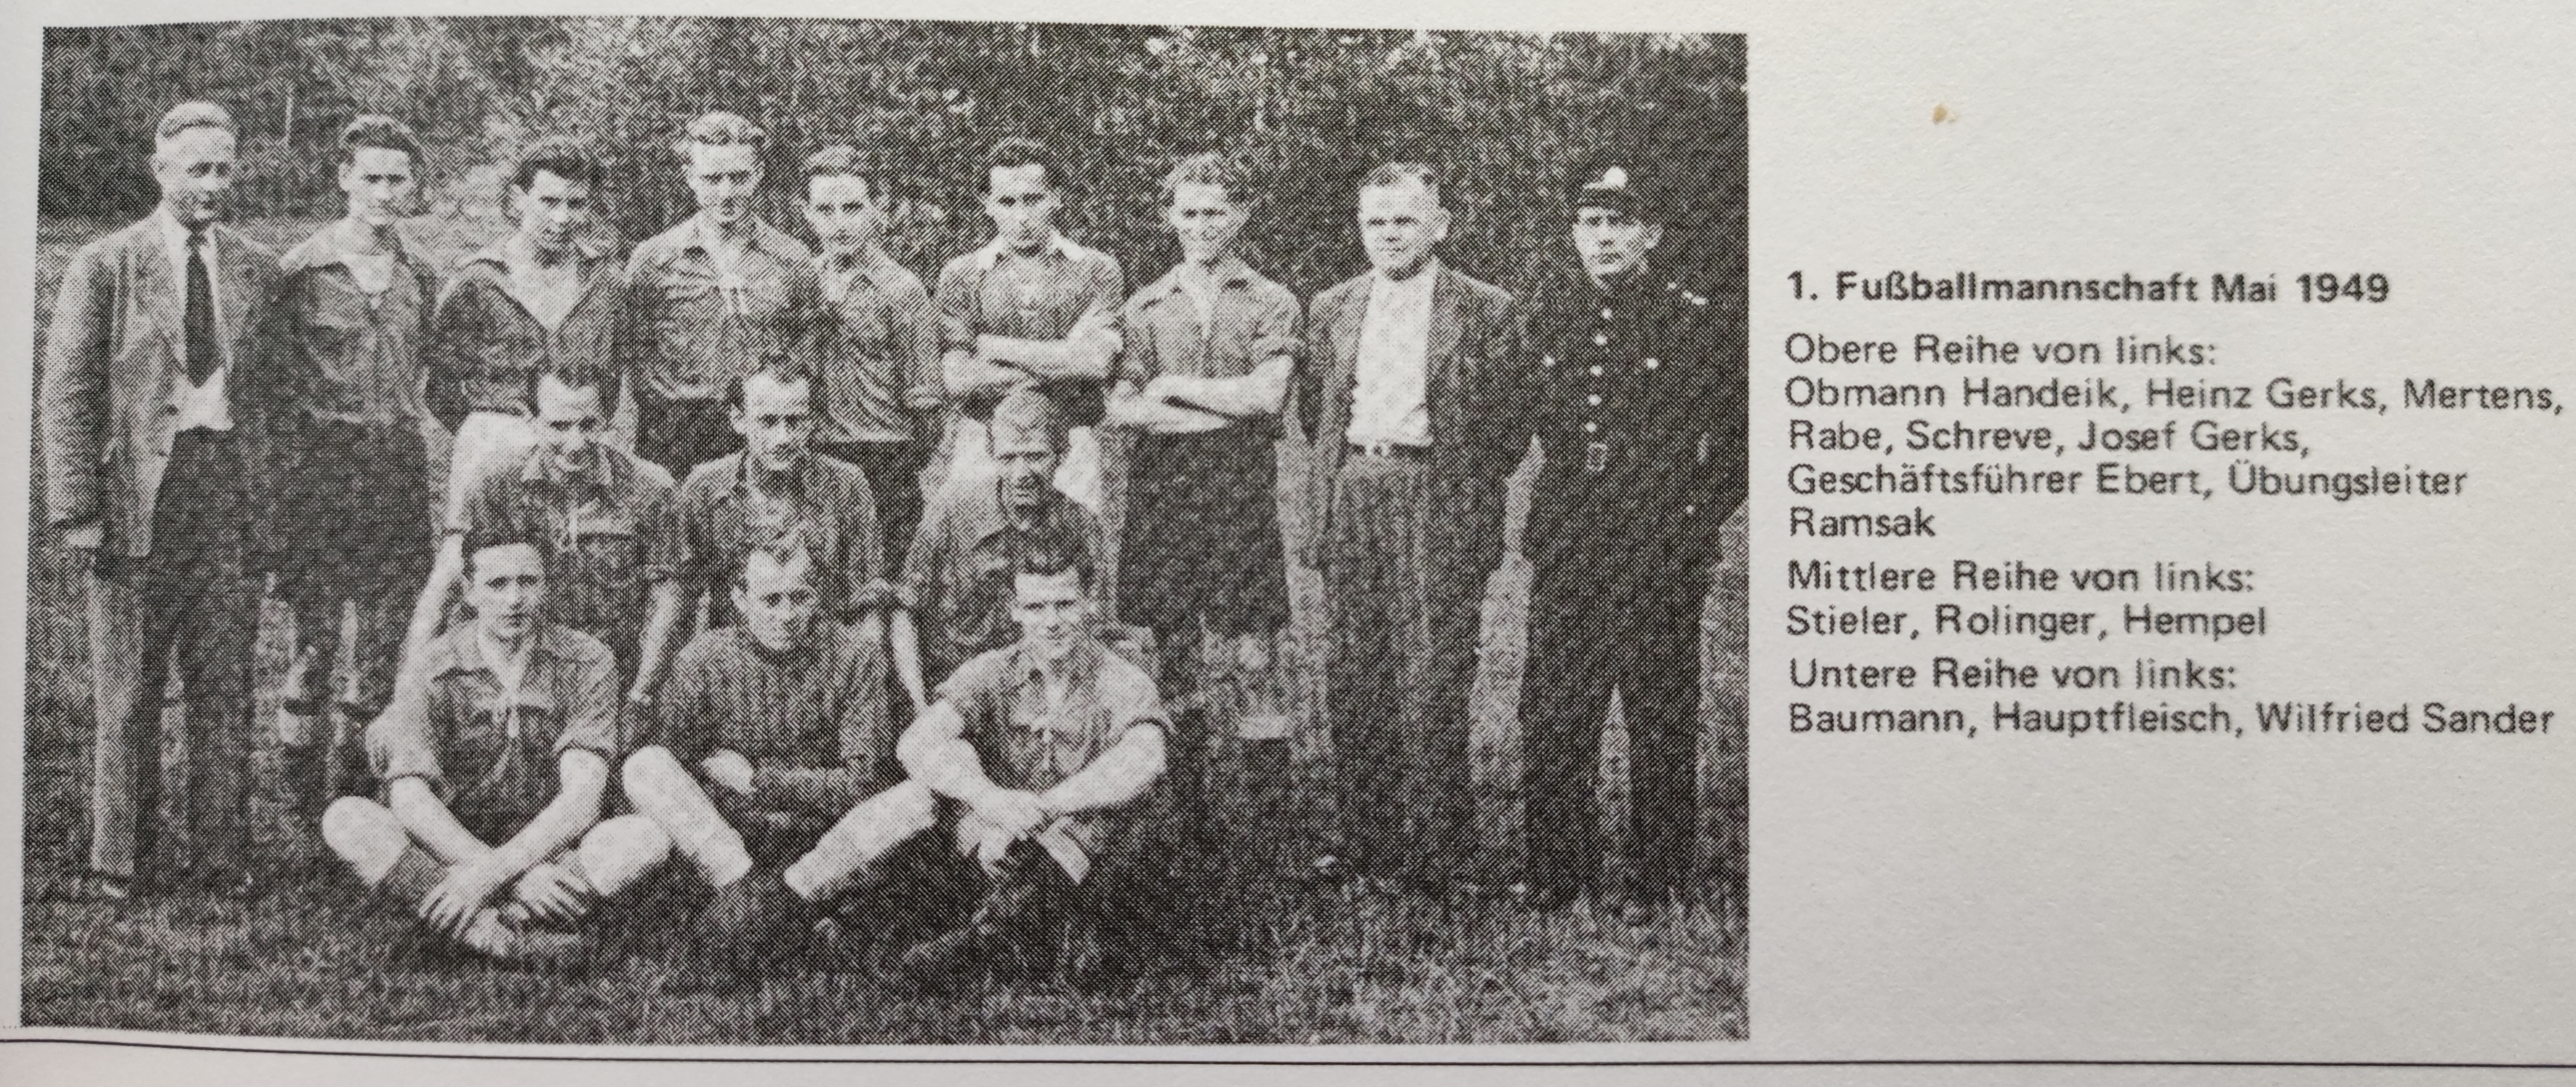 1. Fußballmannschaft Mai 1949